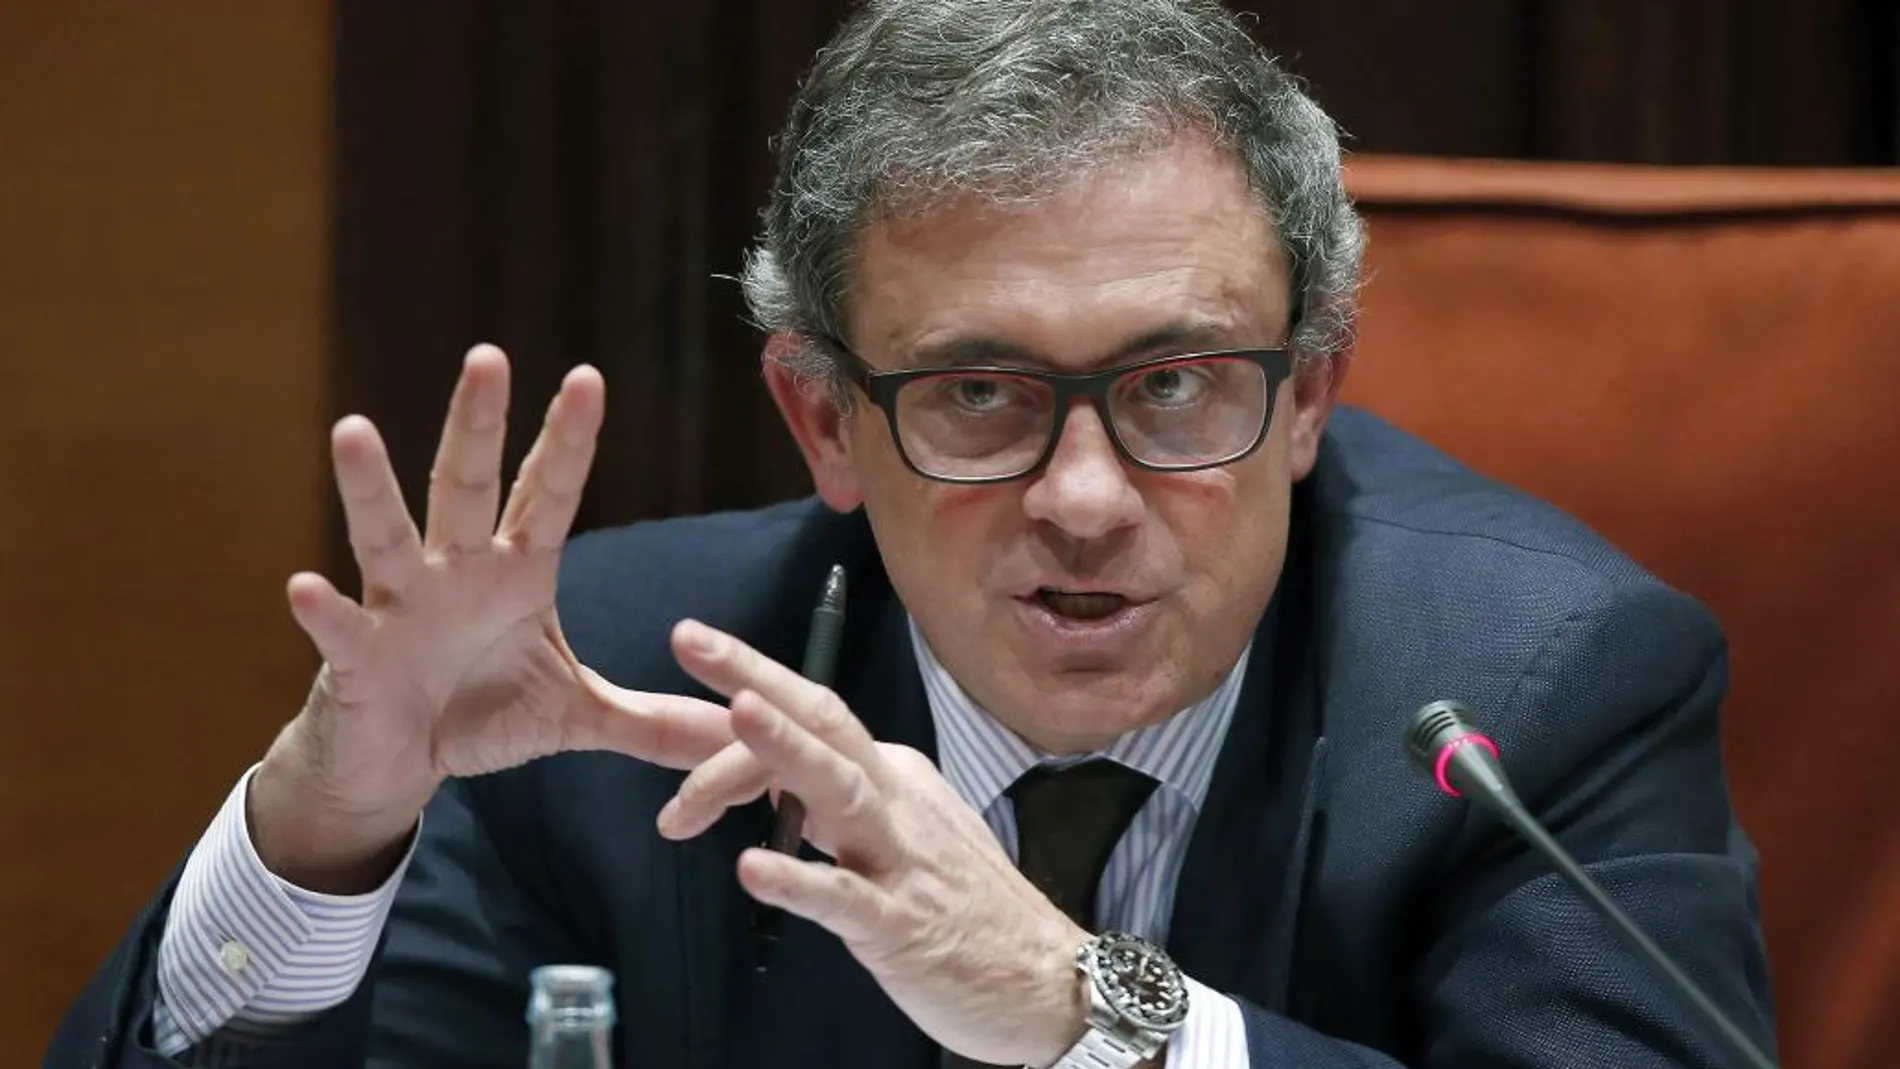 Jordi Pujol Ferrusola, hijo mayor del expresidente de la Generalitat Jordi Pujol, durante su comparecencia ante la comisión de investigación del Parlament.